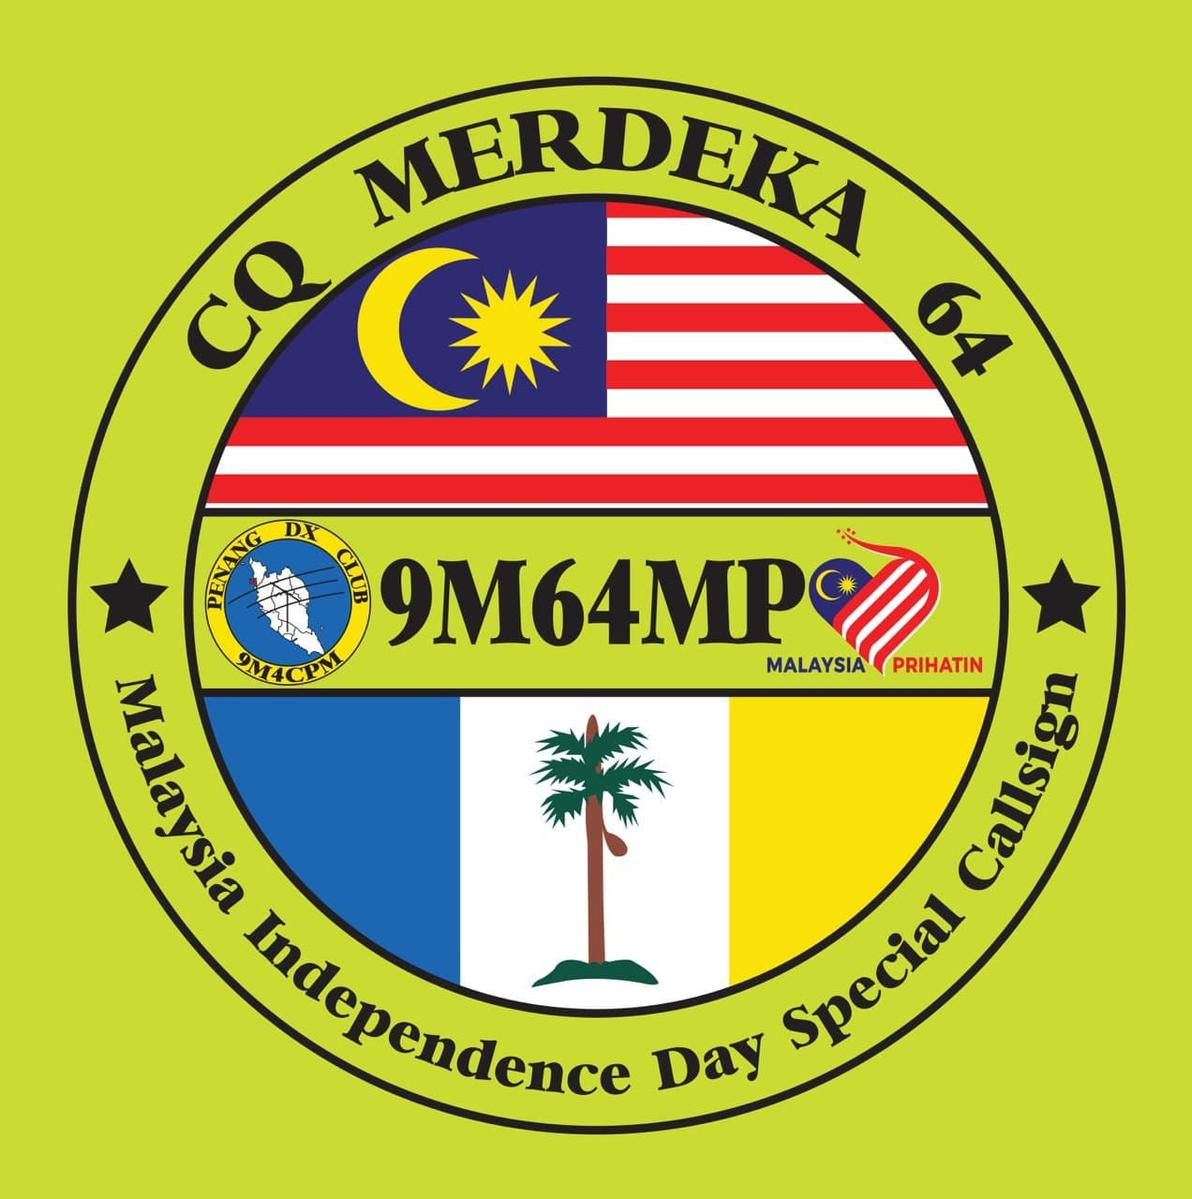 9M64MP Tasek Gelugor, Penang, Malaysia